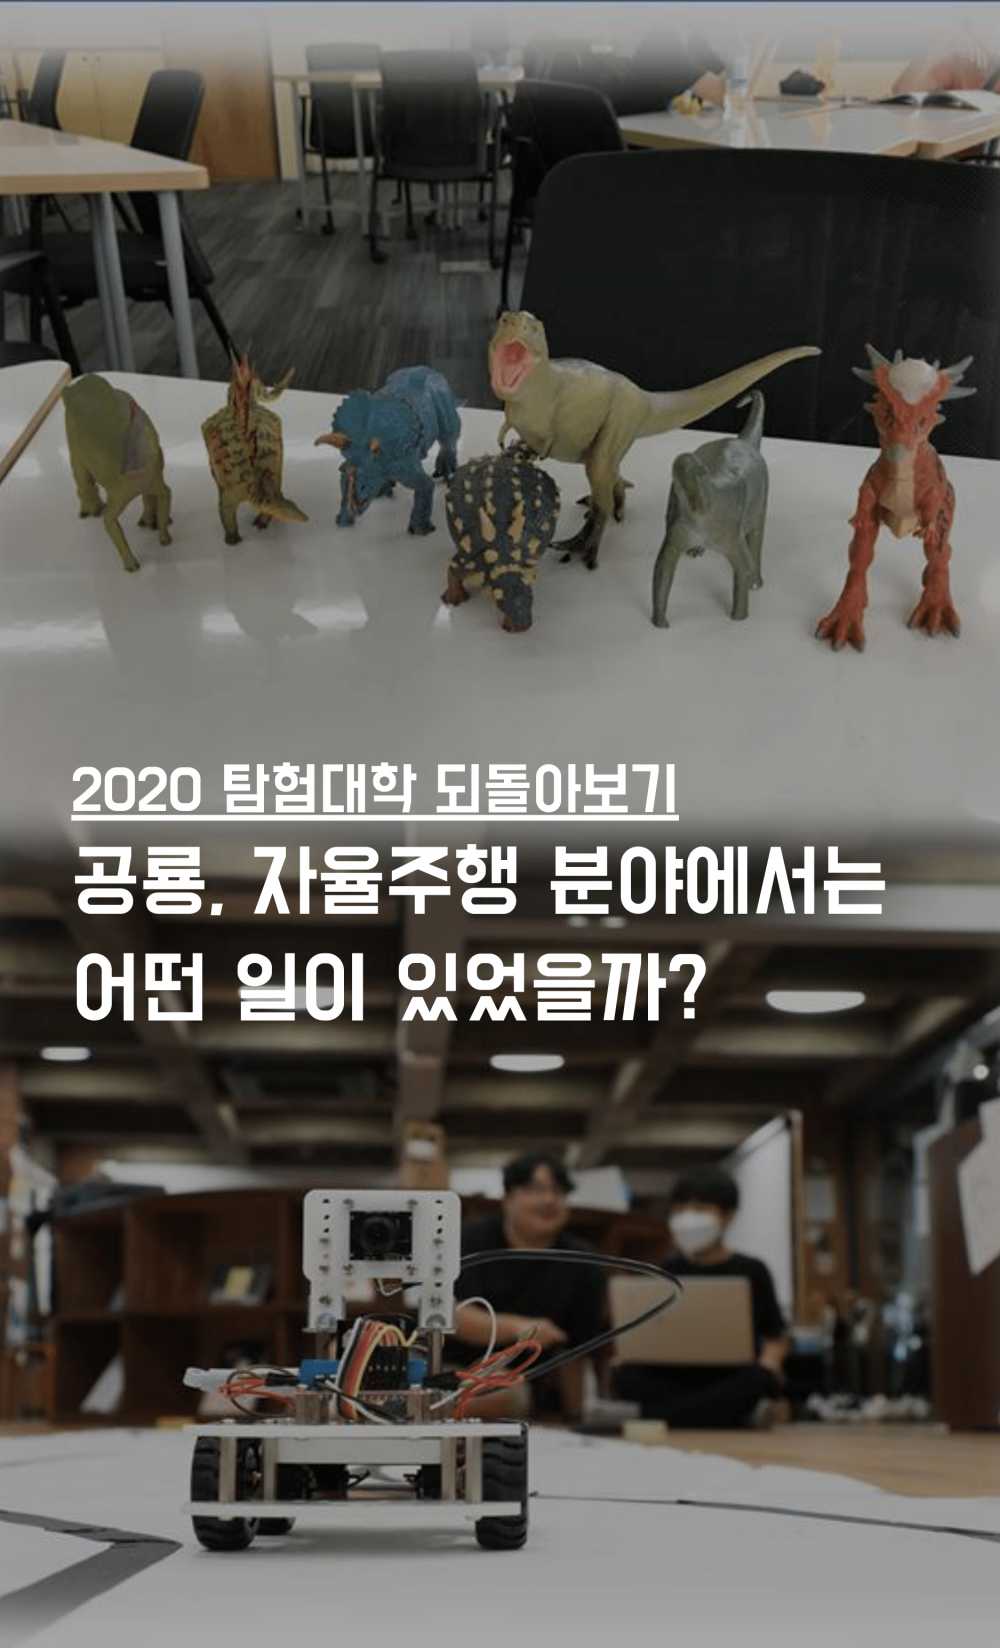 [2020 탐험대학 되돌아보기] 공룡, 자율주행 분야에서는 어떤 일이 있었을까?